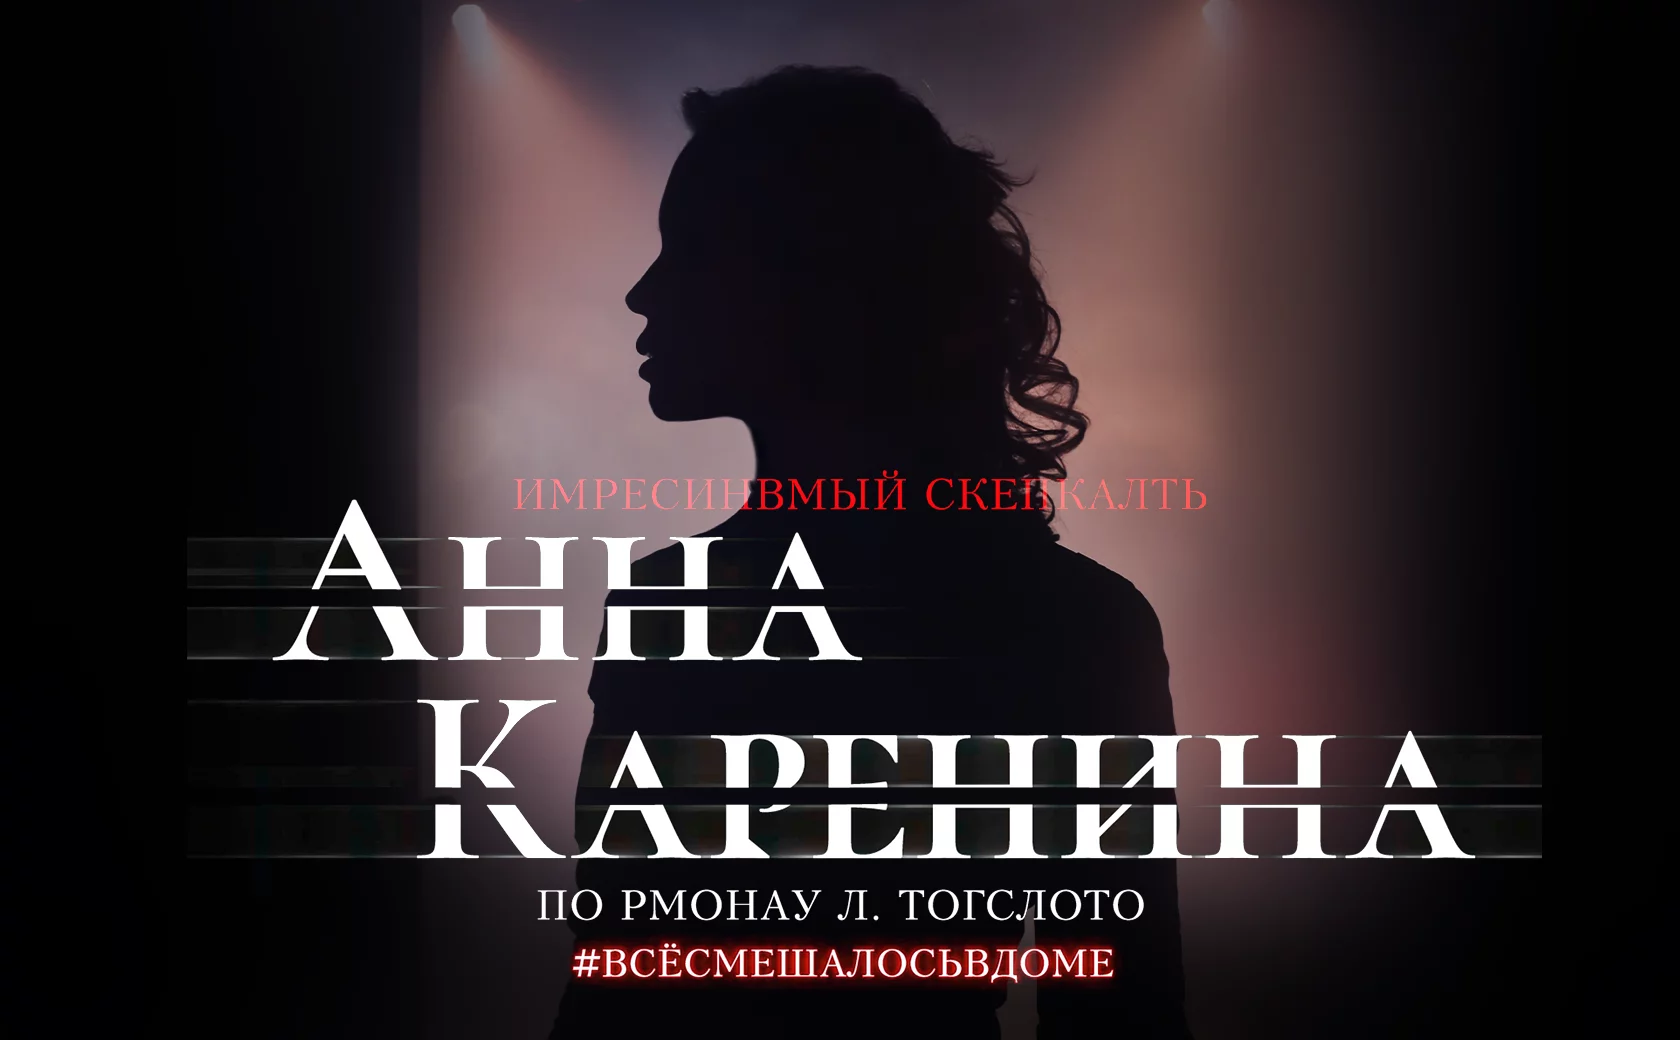 Анна Каренина|Иммерсивное шоу, Казань, билеты от 6 000 руб.